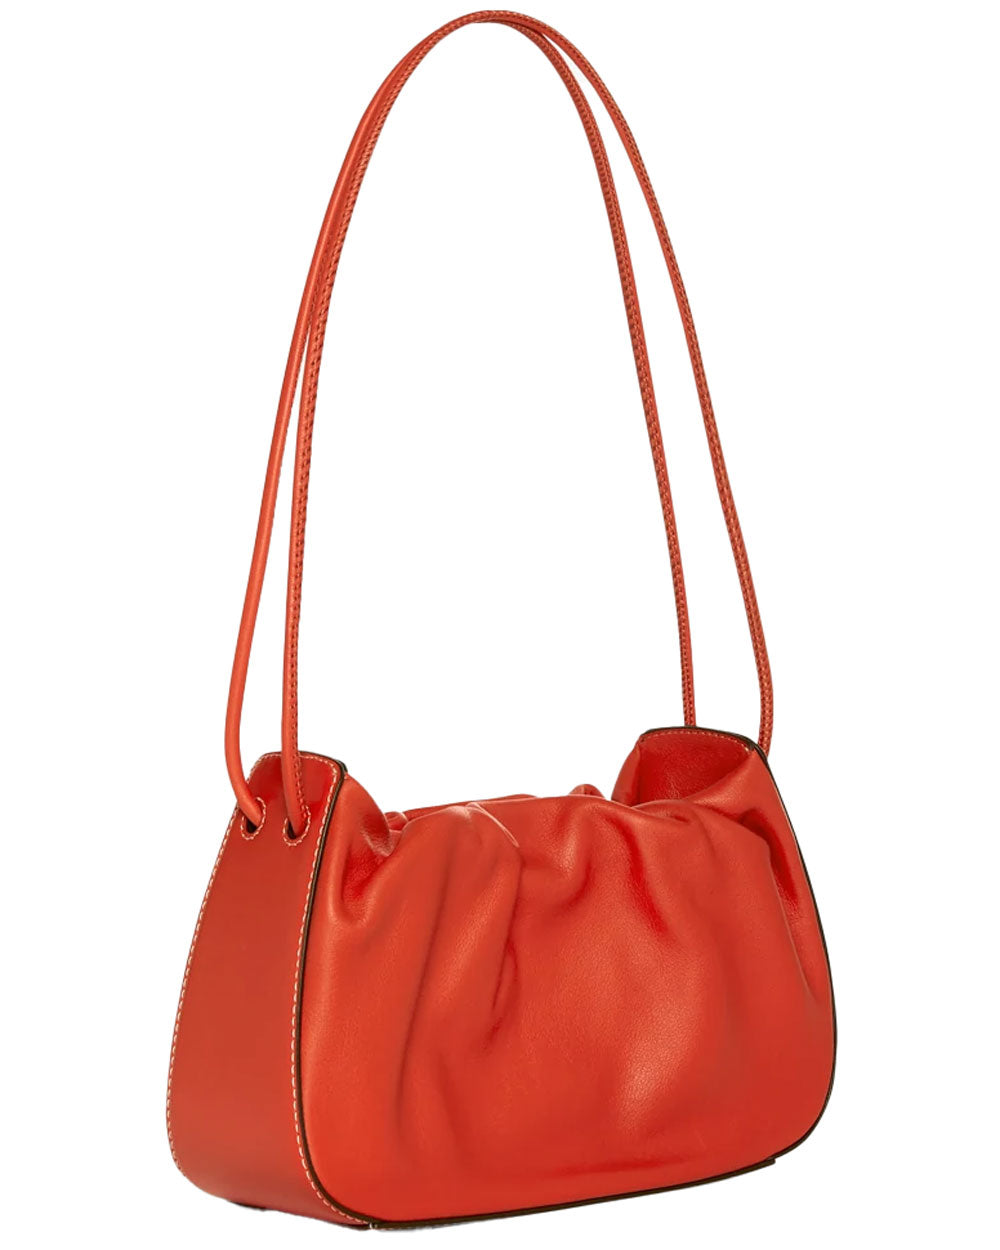 Kiki Shoulder Bag in Blood Orange